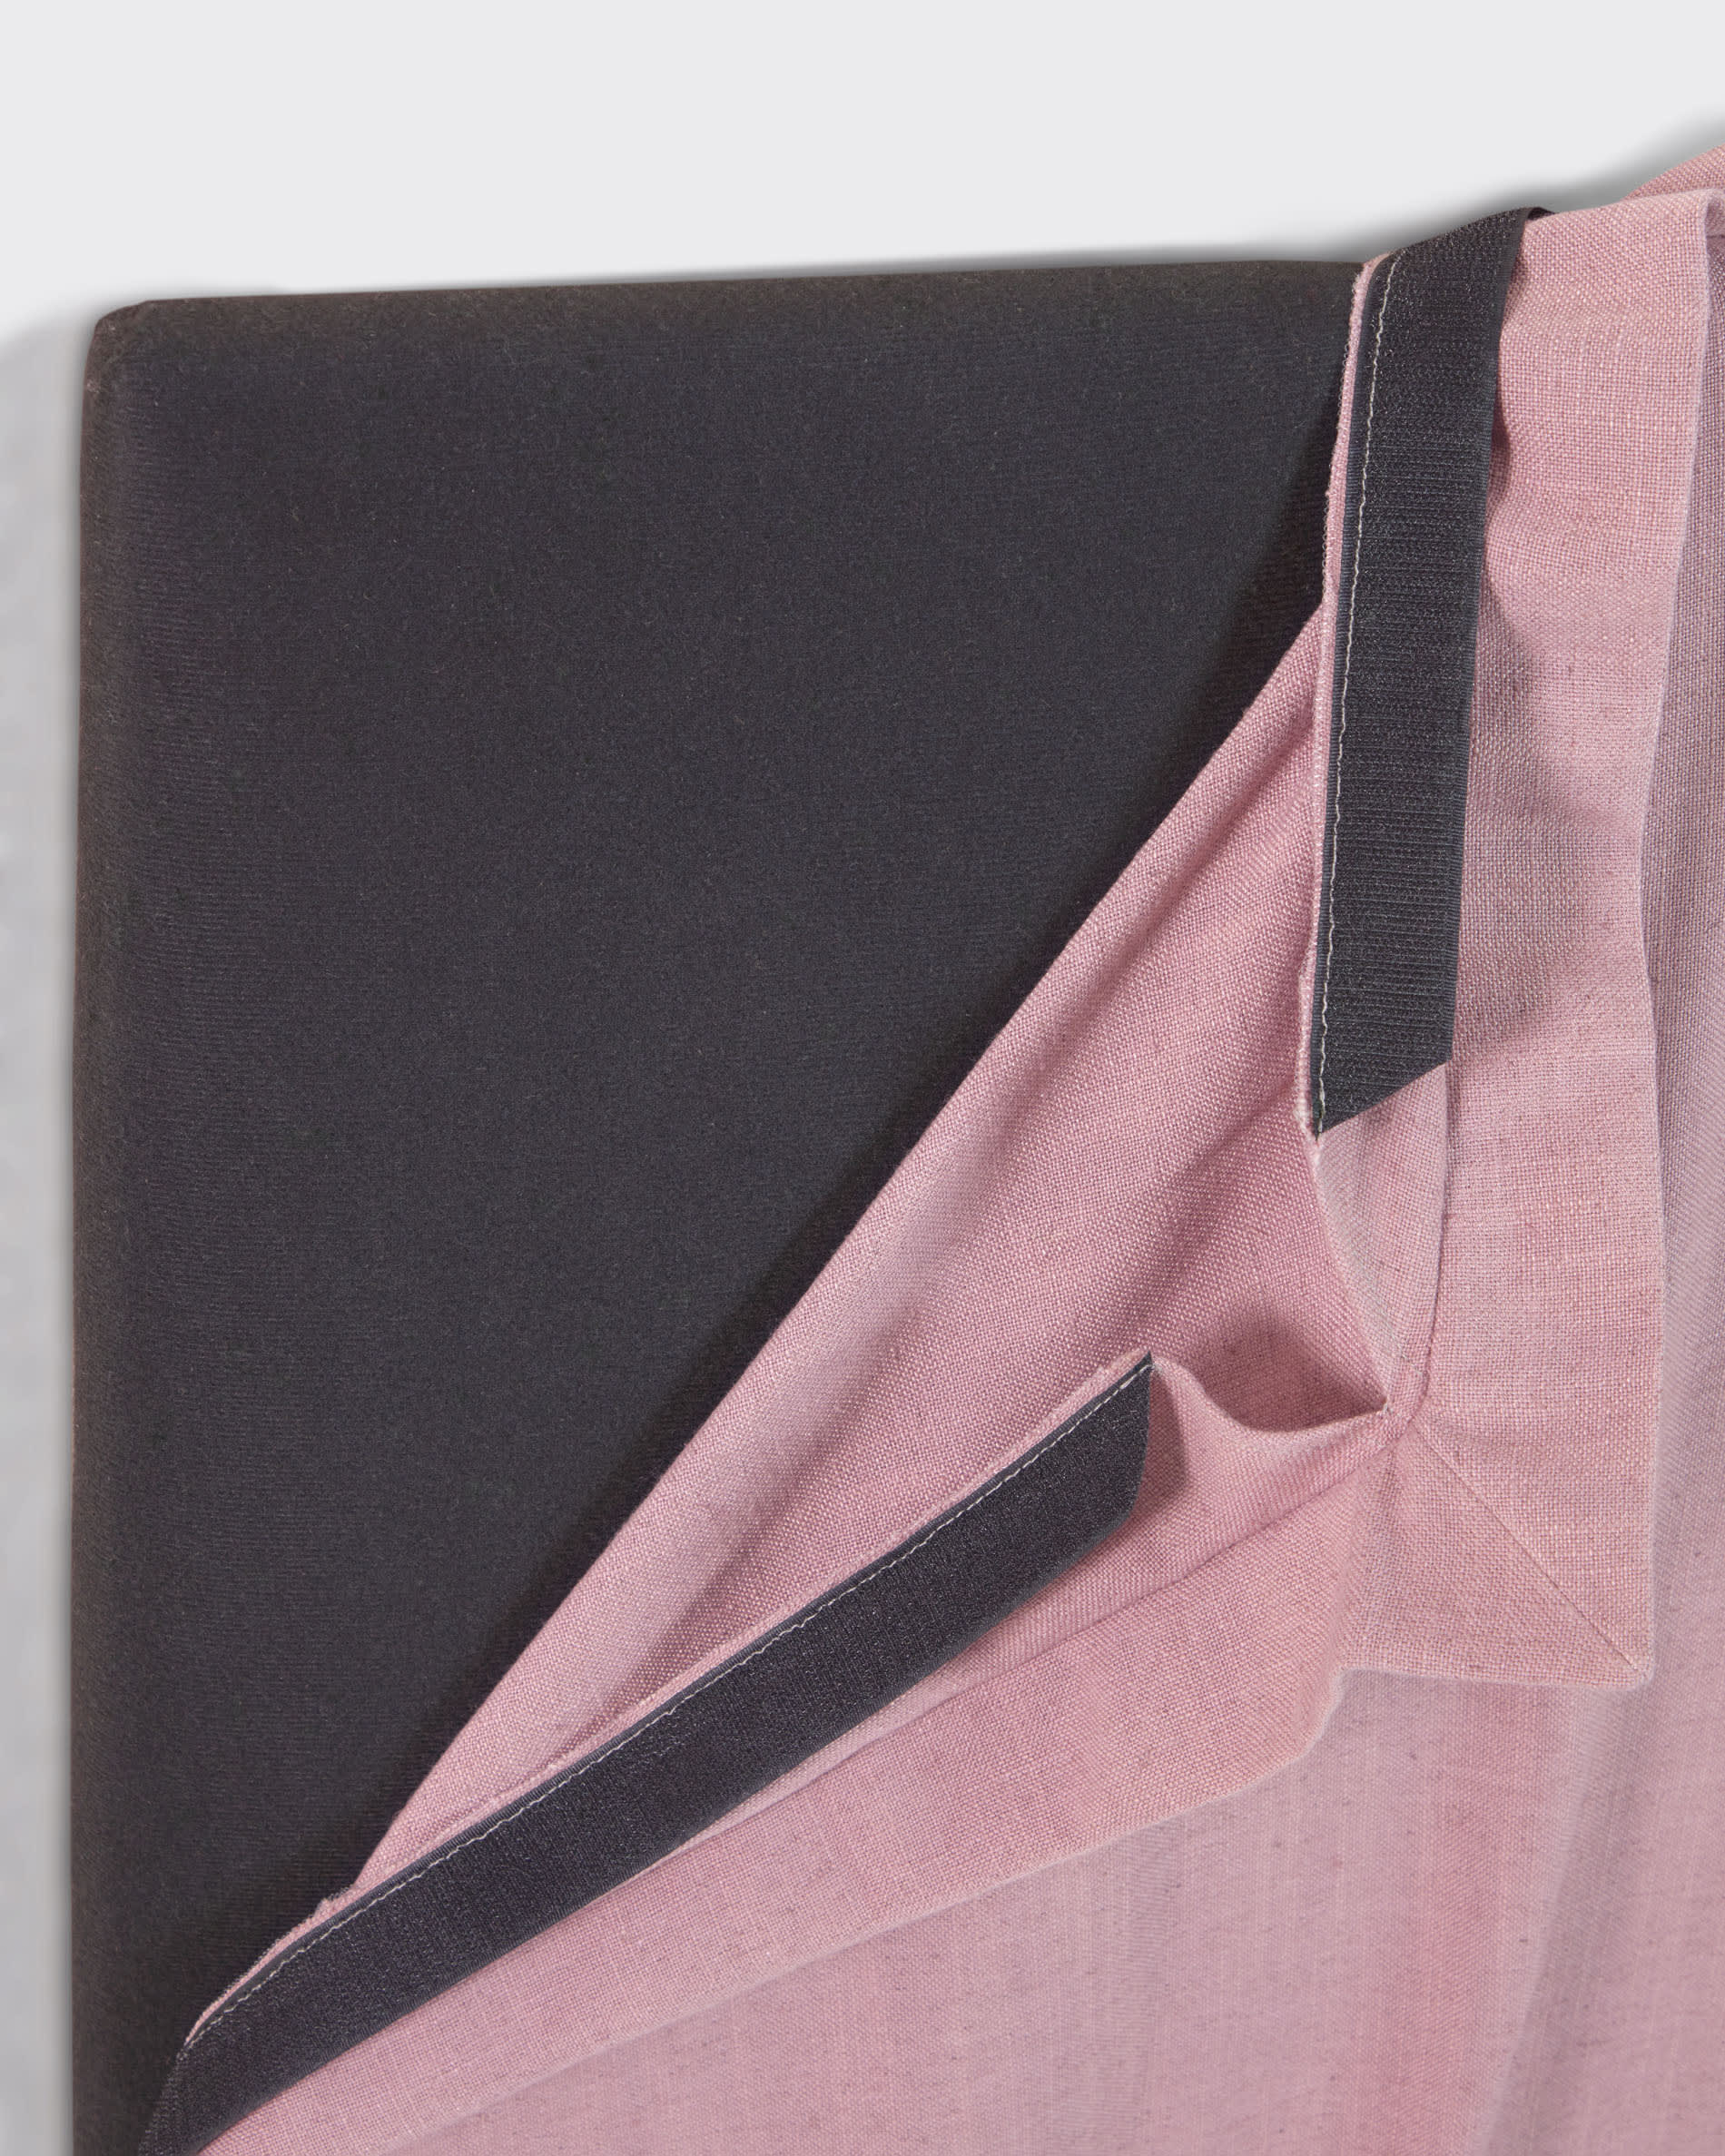 Tanit fejvég rózsaszín vászon levehető huzattal, 90 cm-es ágyakhoz